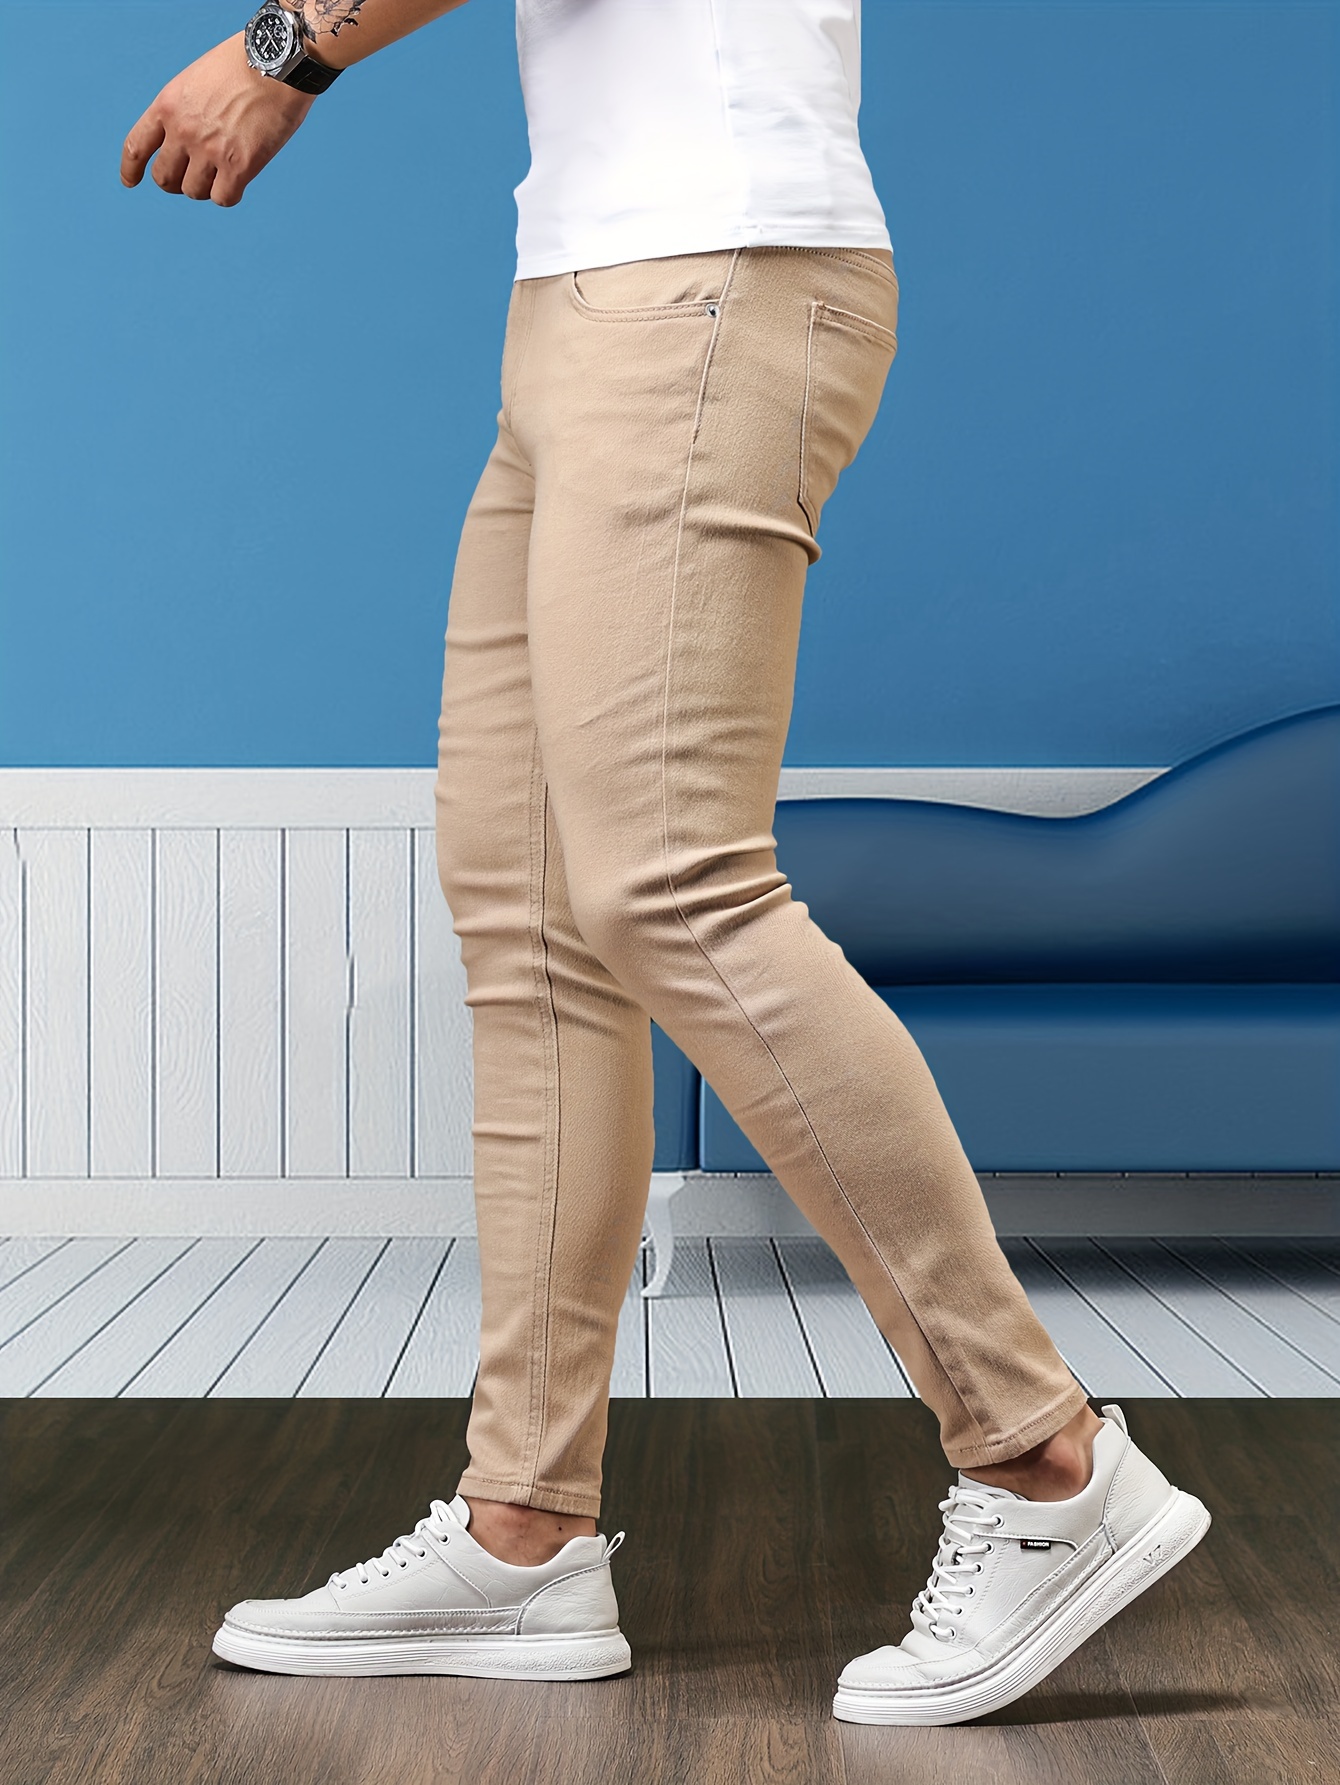 NHNKB Pantalones casuales largos para hombre pantalones elásticos